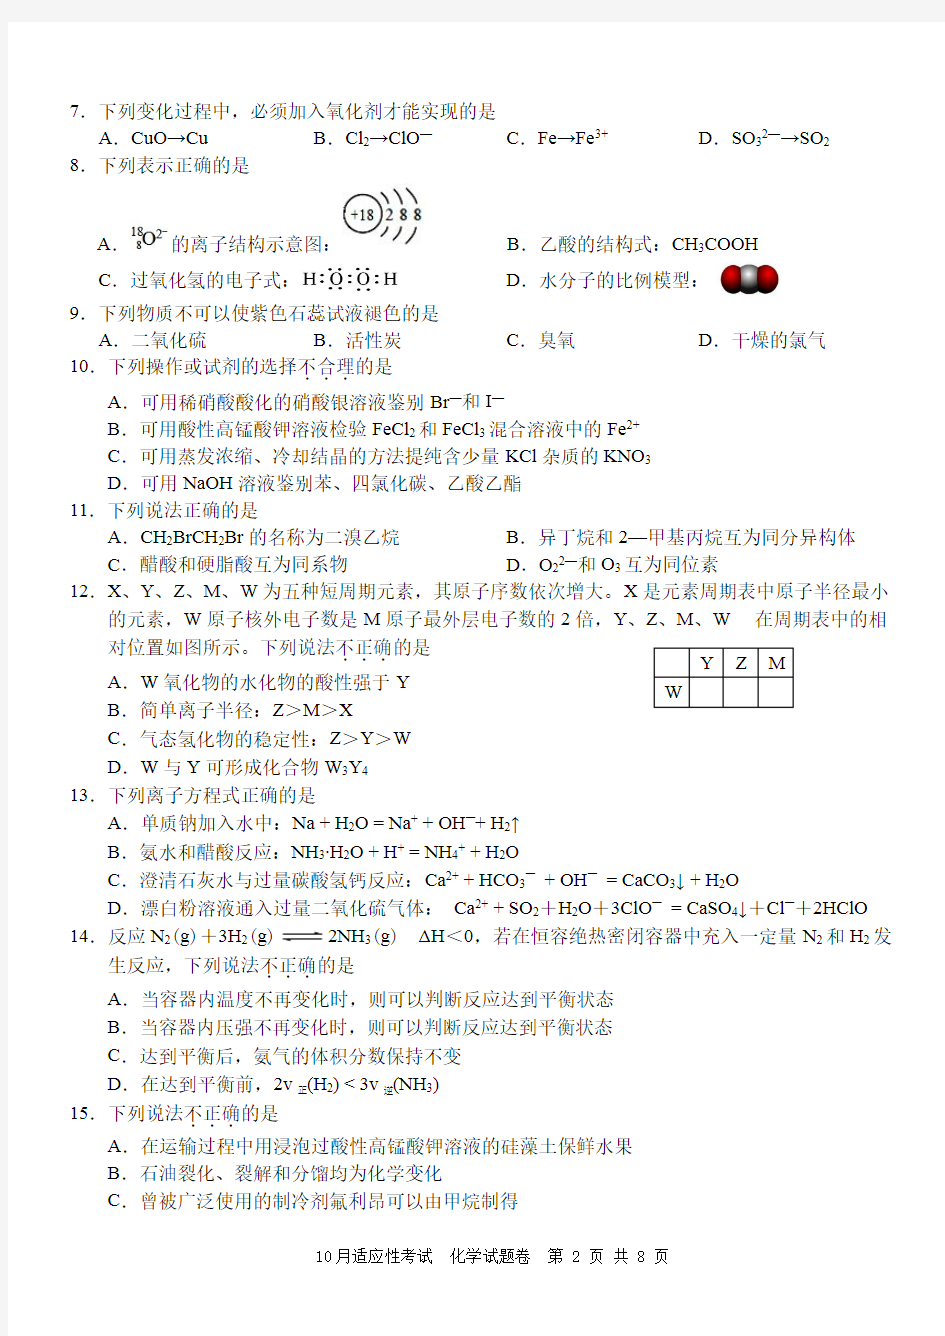 浙江省选考学考十校联盟2018年10月适应性考试化学试卷